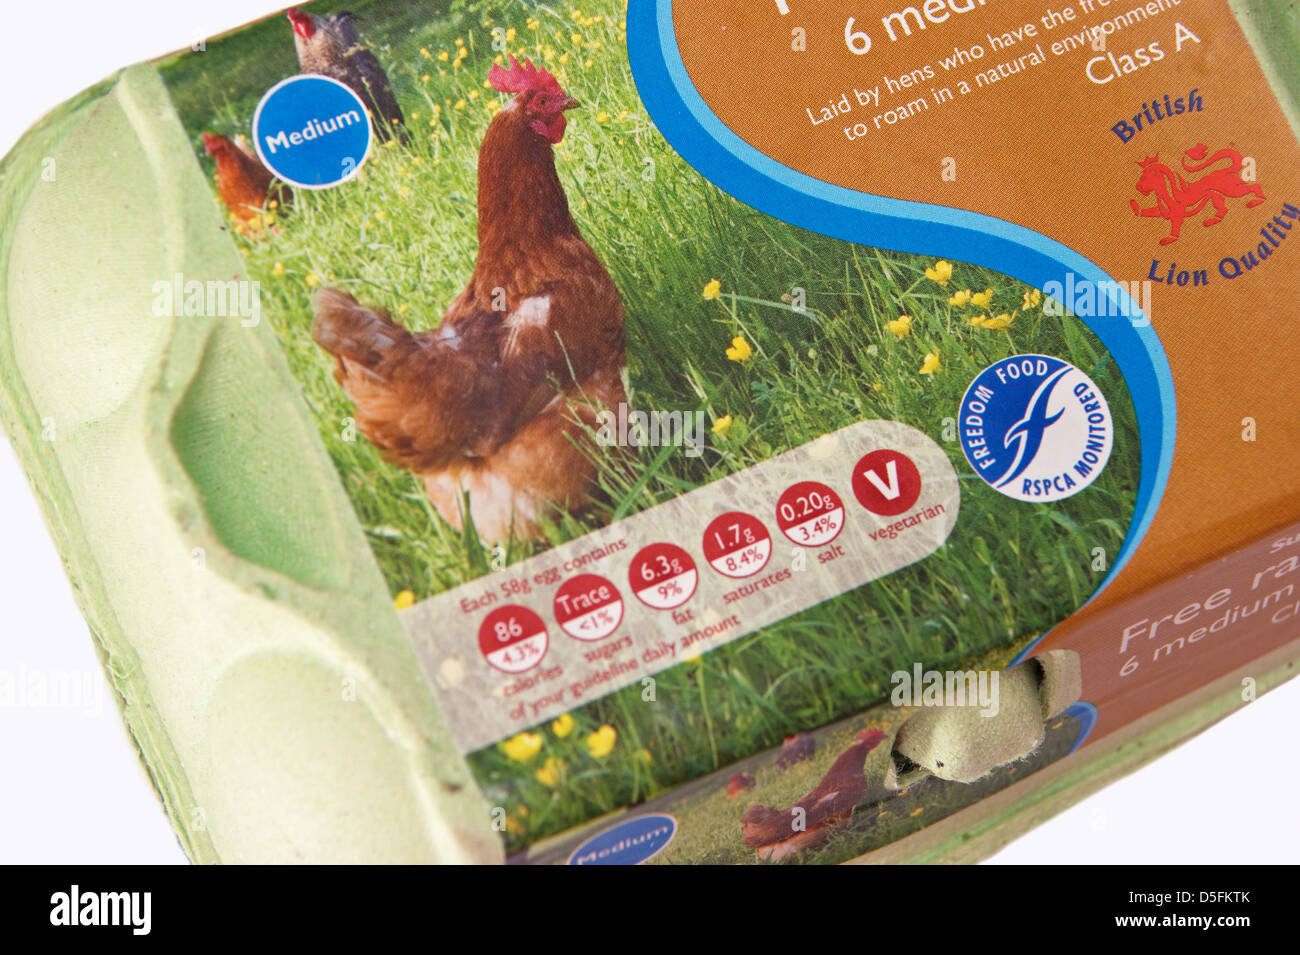 Eine Schachtel mit freilaufenden Eiern mit dem RSPCA Freiheit Essen Logo / Zeichen & Ernährung Inhalt Kennzeichnung Stockfoto